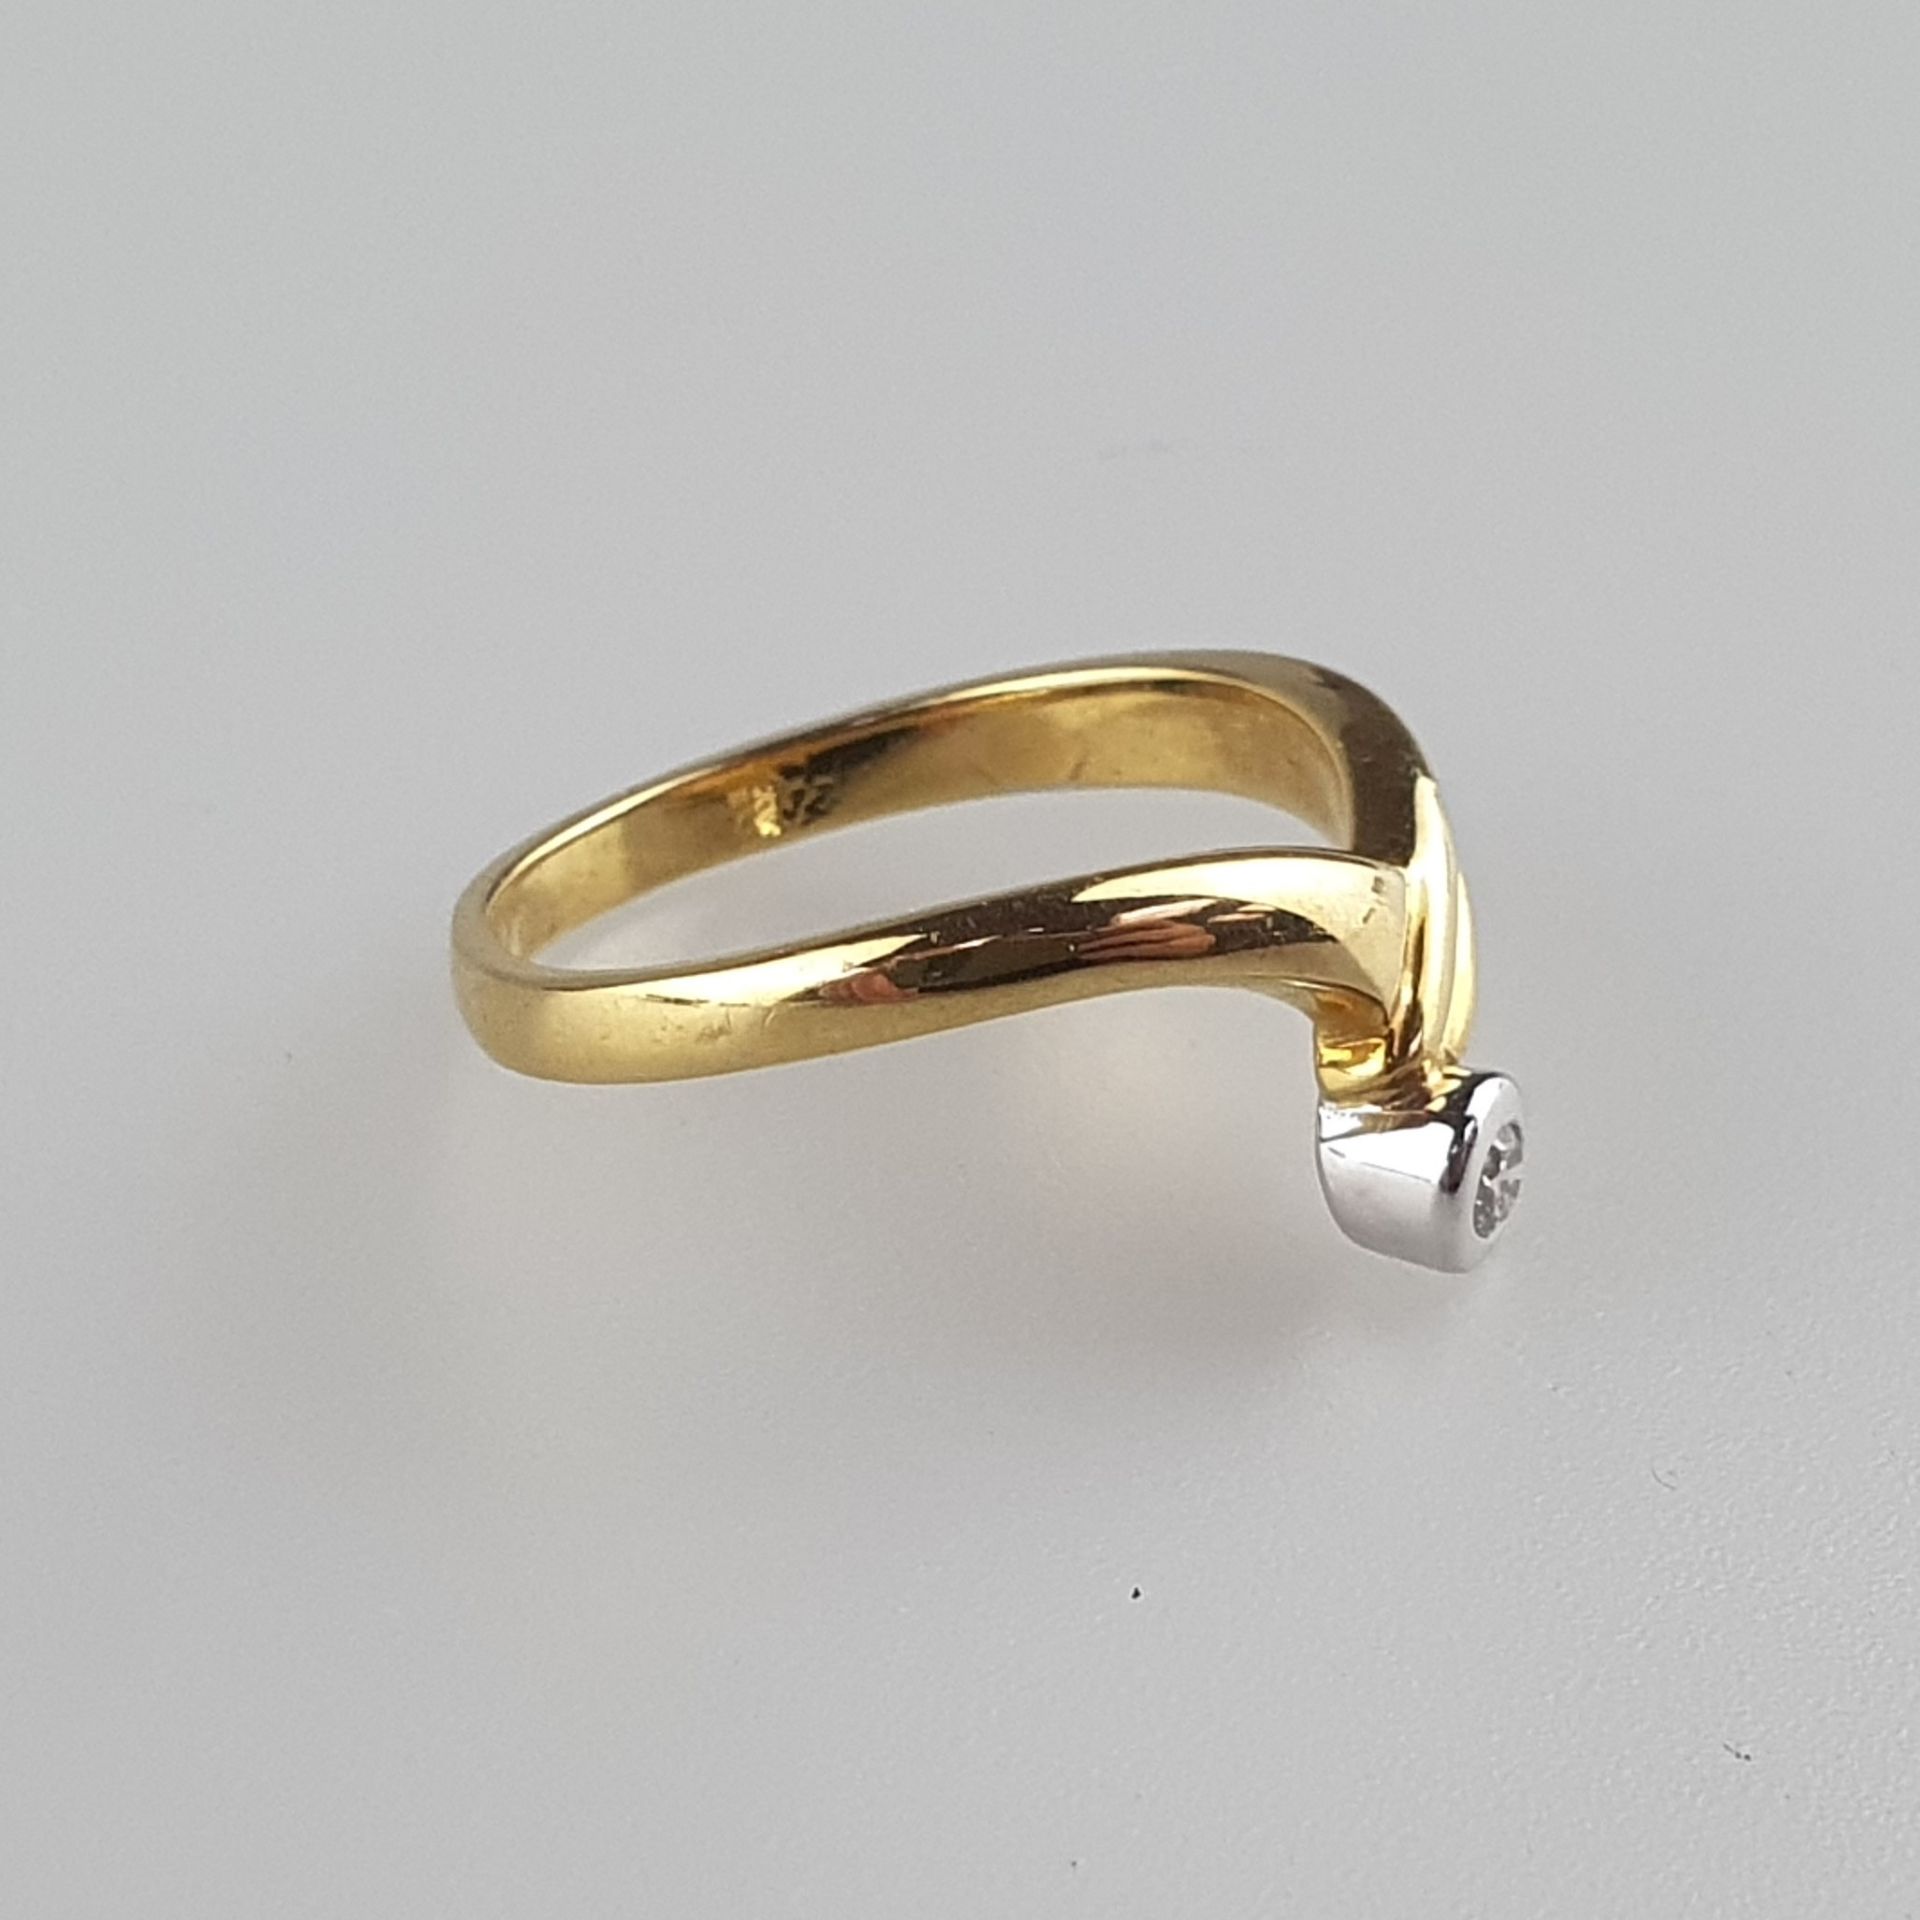 Goldring mit Brillant - Gelb-/Weißgold 750/000, gestempelt, spitz zulaufender Ringkopf besetzt mit - Bild 3 aus 6